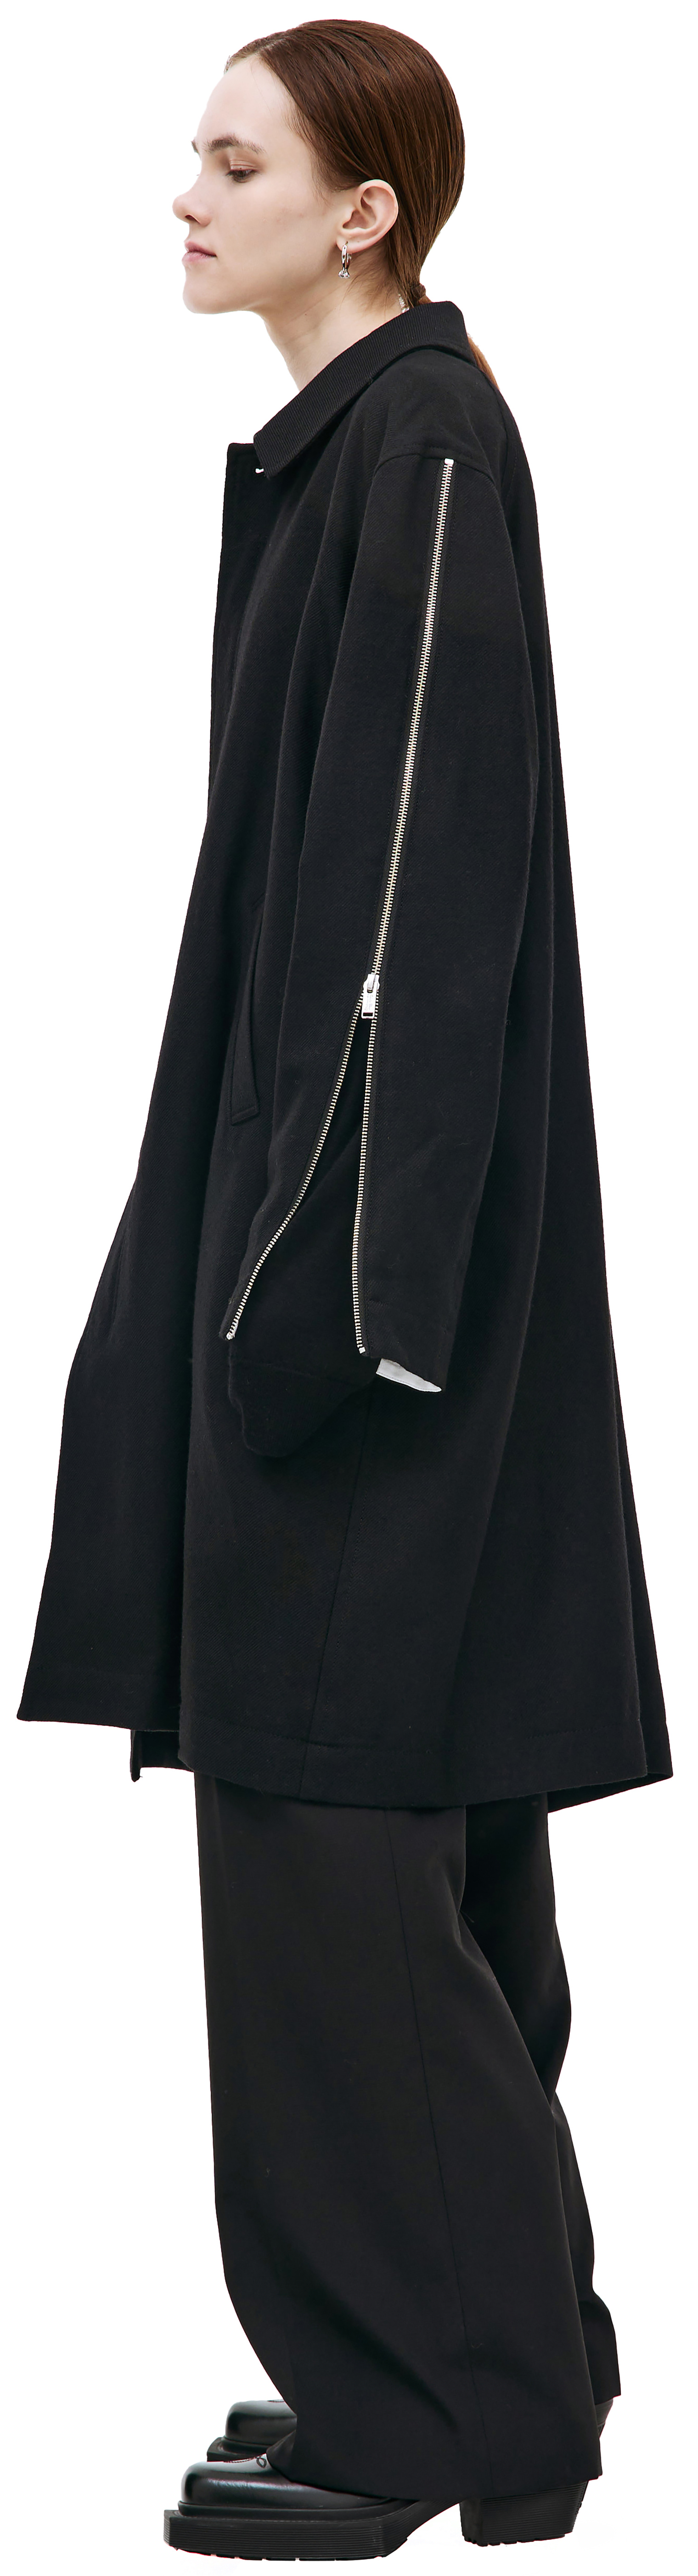 Undercover Black zip coat